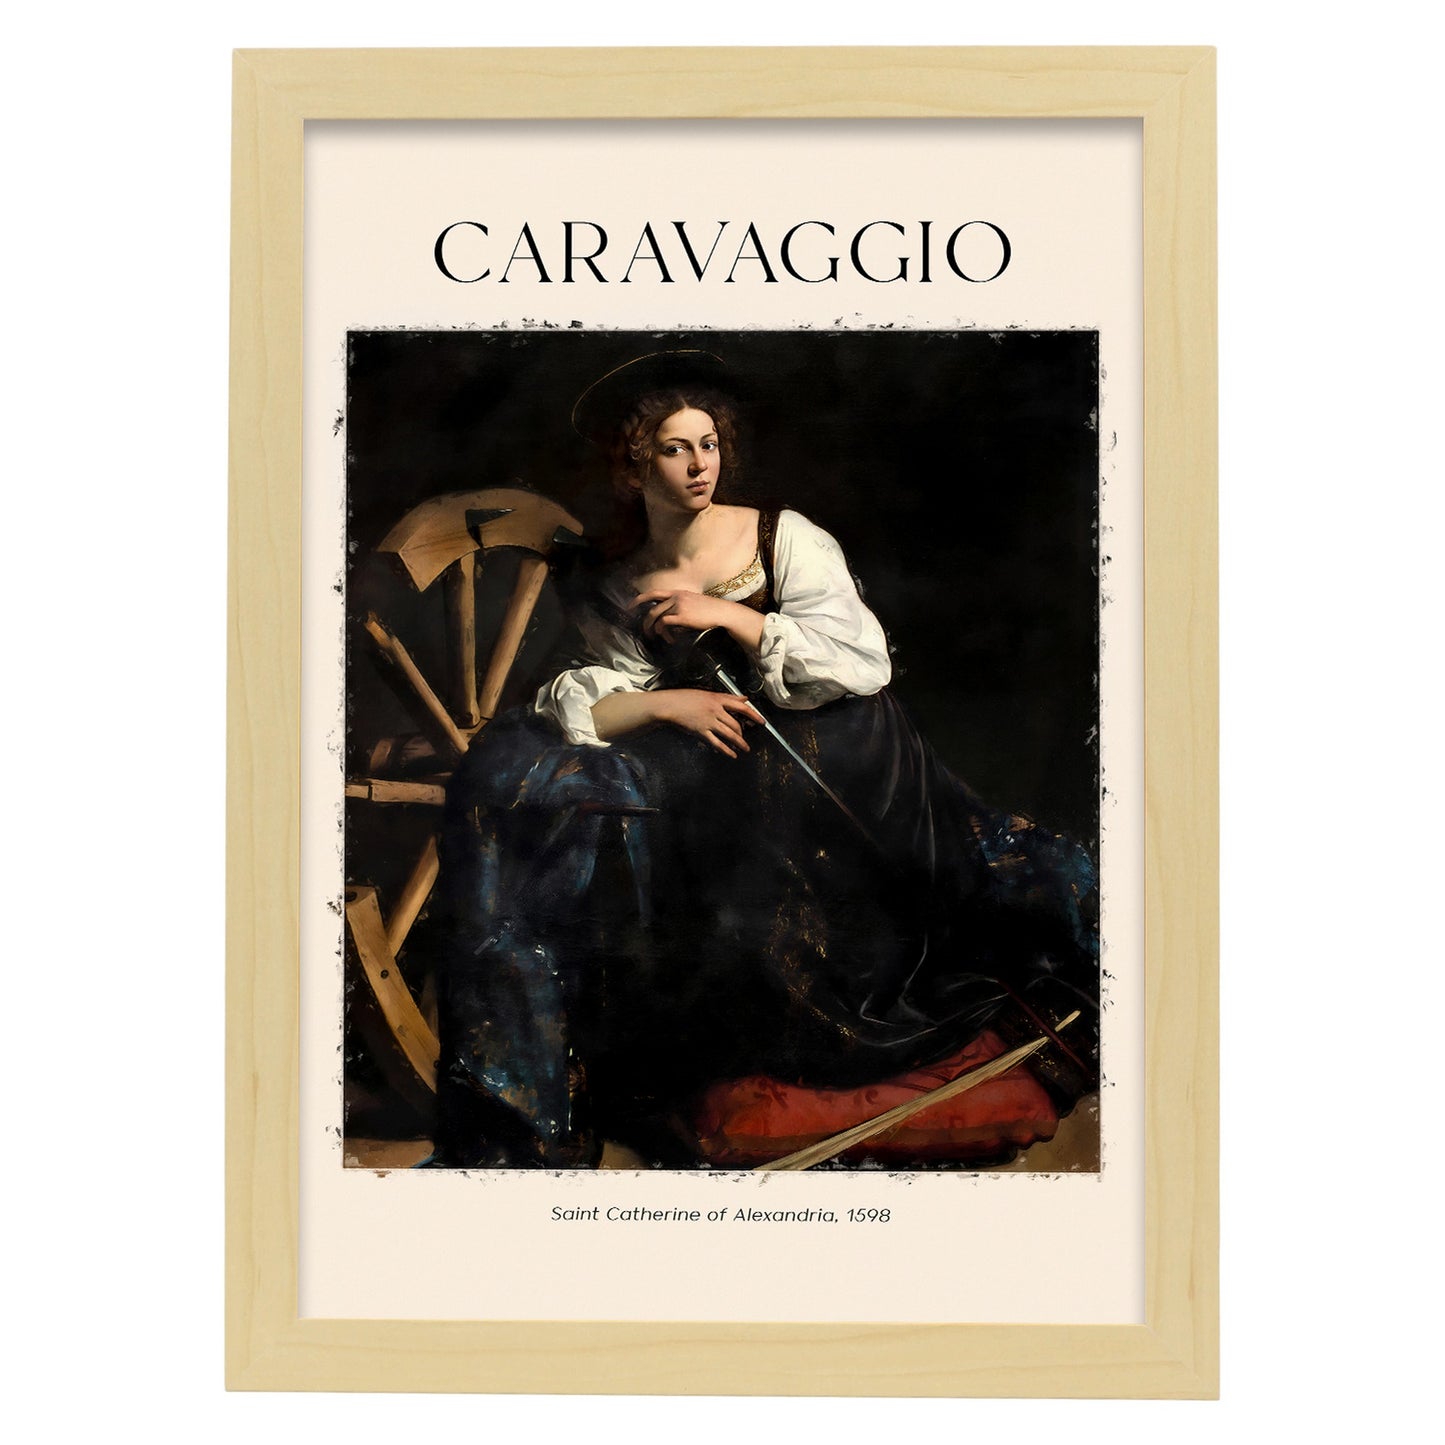 Lámina de Santa Catherine de Alejandría inspirada en Caravaggio